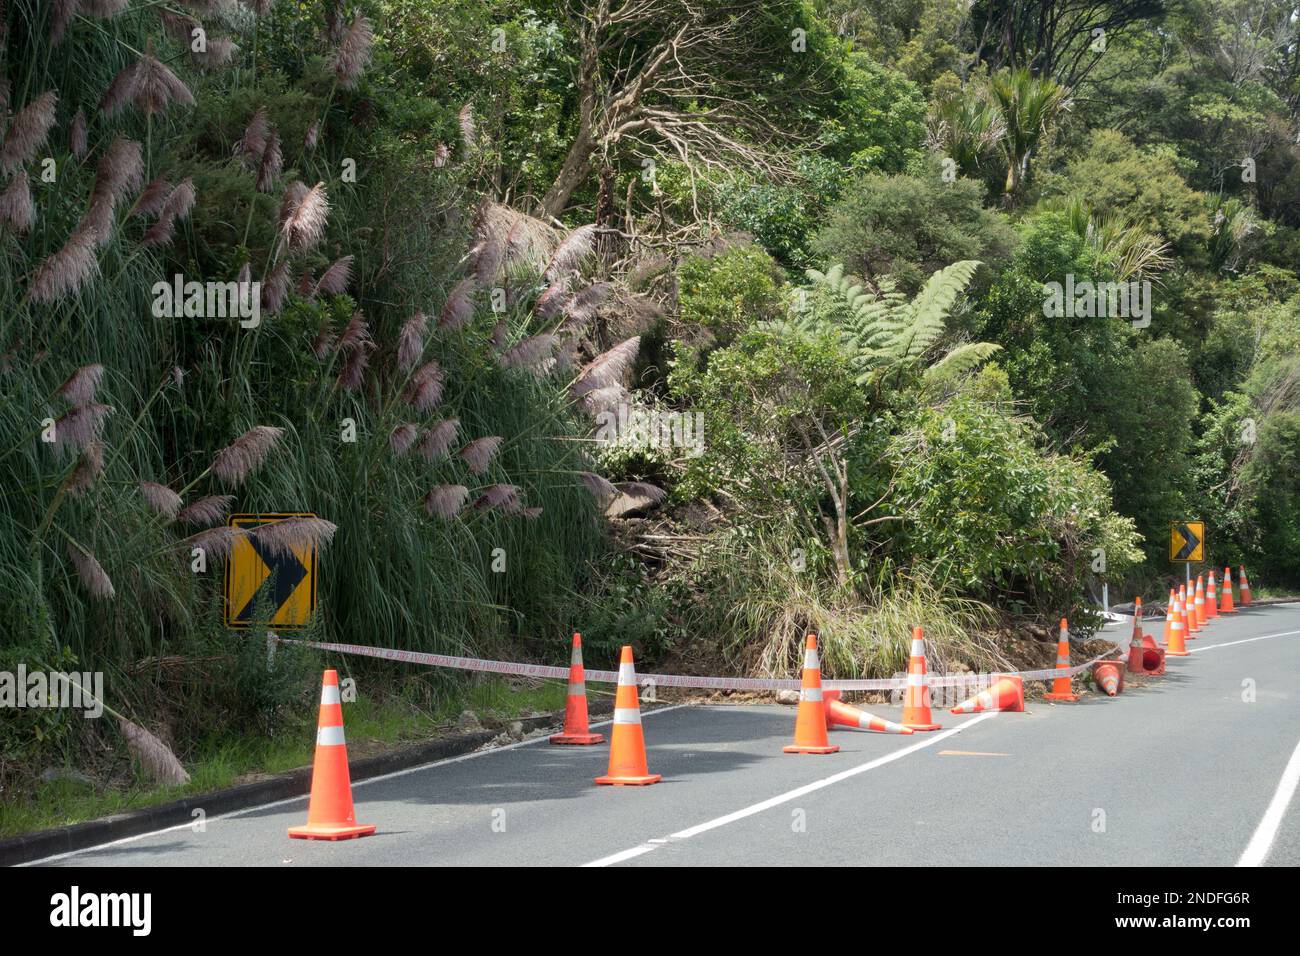 Nach dem tropischen Sturm Cyclone Gabrielle ist ein Landrutschen aufgetreten, der eine halbe Straße blockiert. Orangefarbene Sicherheitskegel sind um den umgestürzten Baum herum angebracht Stockfoto